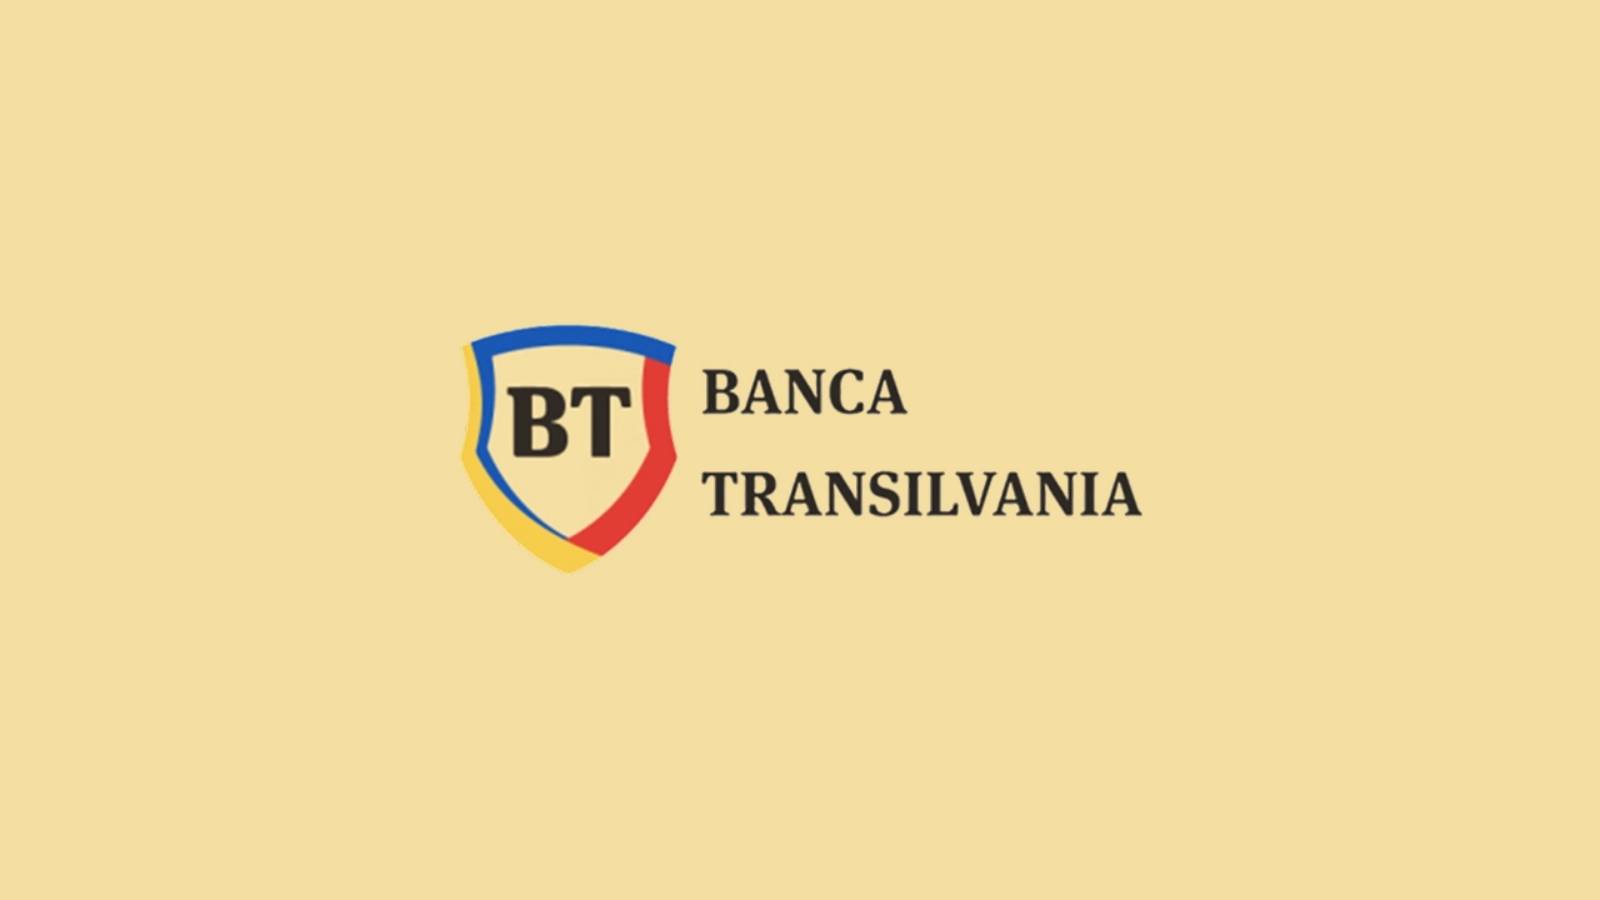 BANCA Transilvania virallinen päätösilmoitus VIIMEINEN HETKI ILMAISEKSI romanialaisille